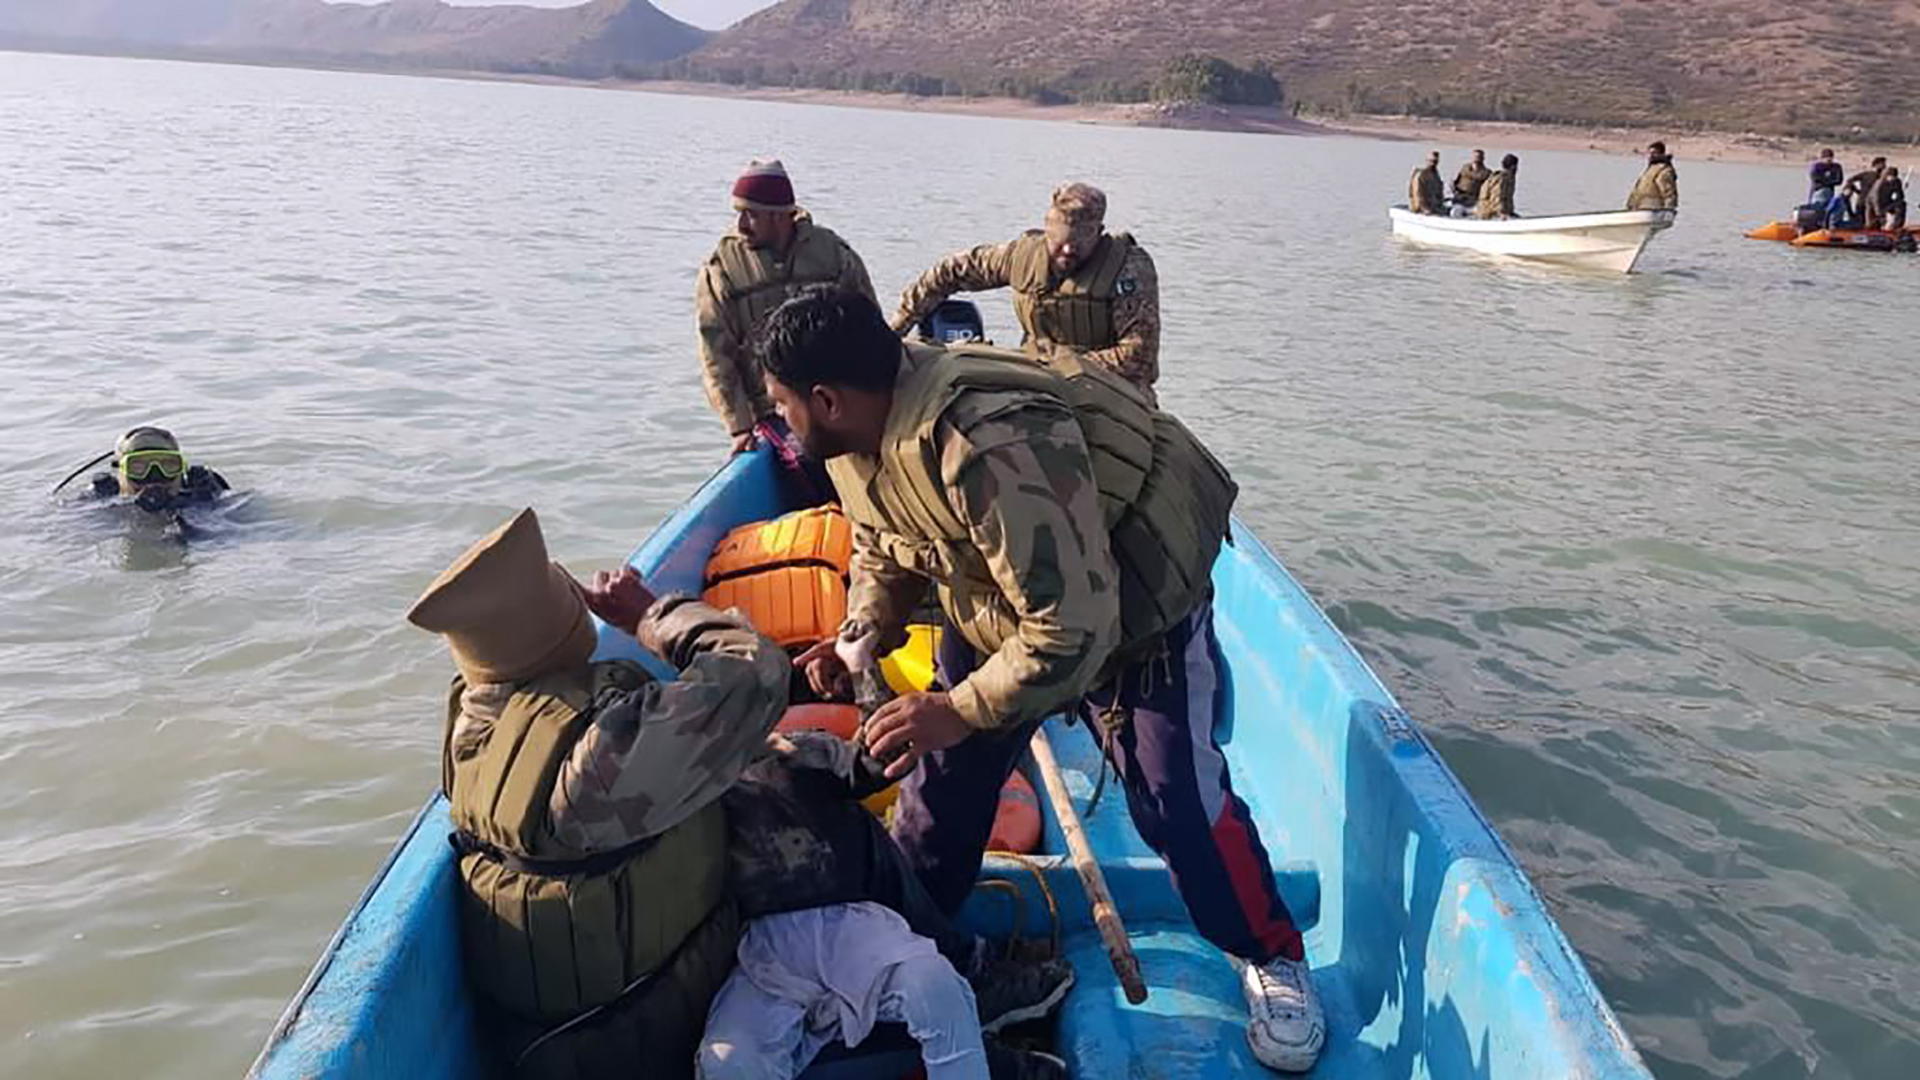 49 Schüler bei Bootsunglück in Pakistan ertrunken